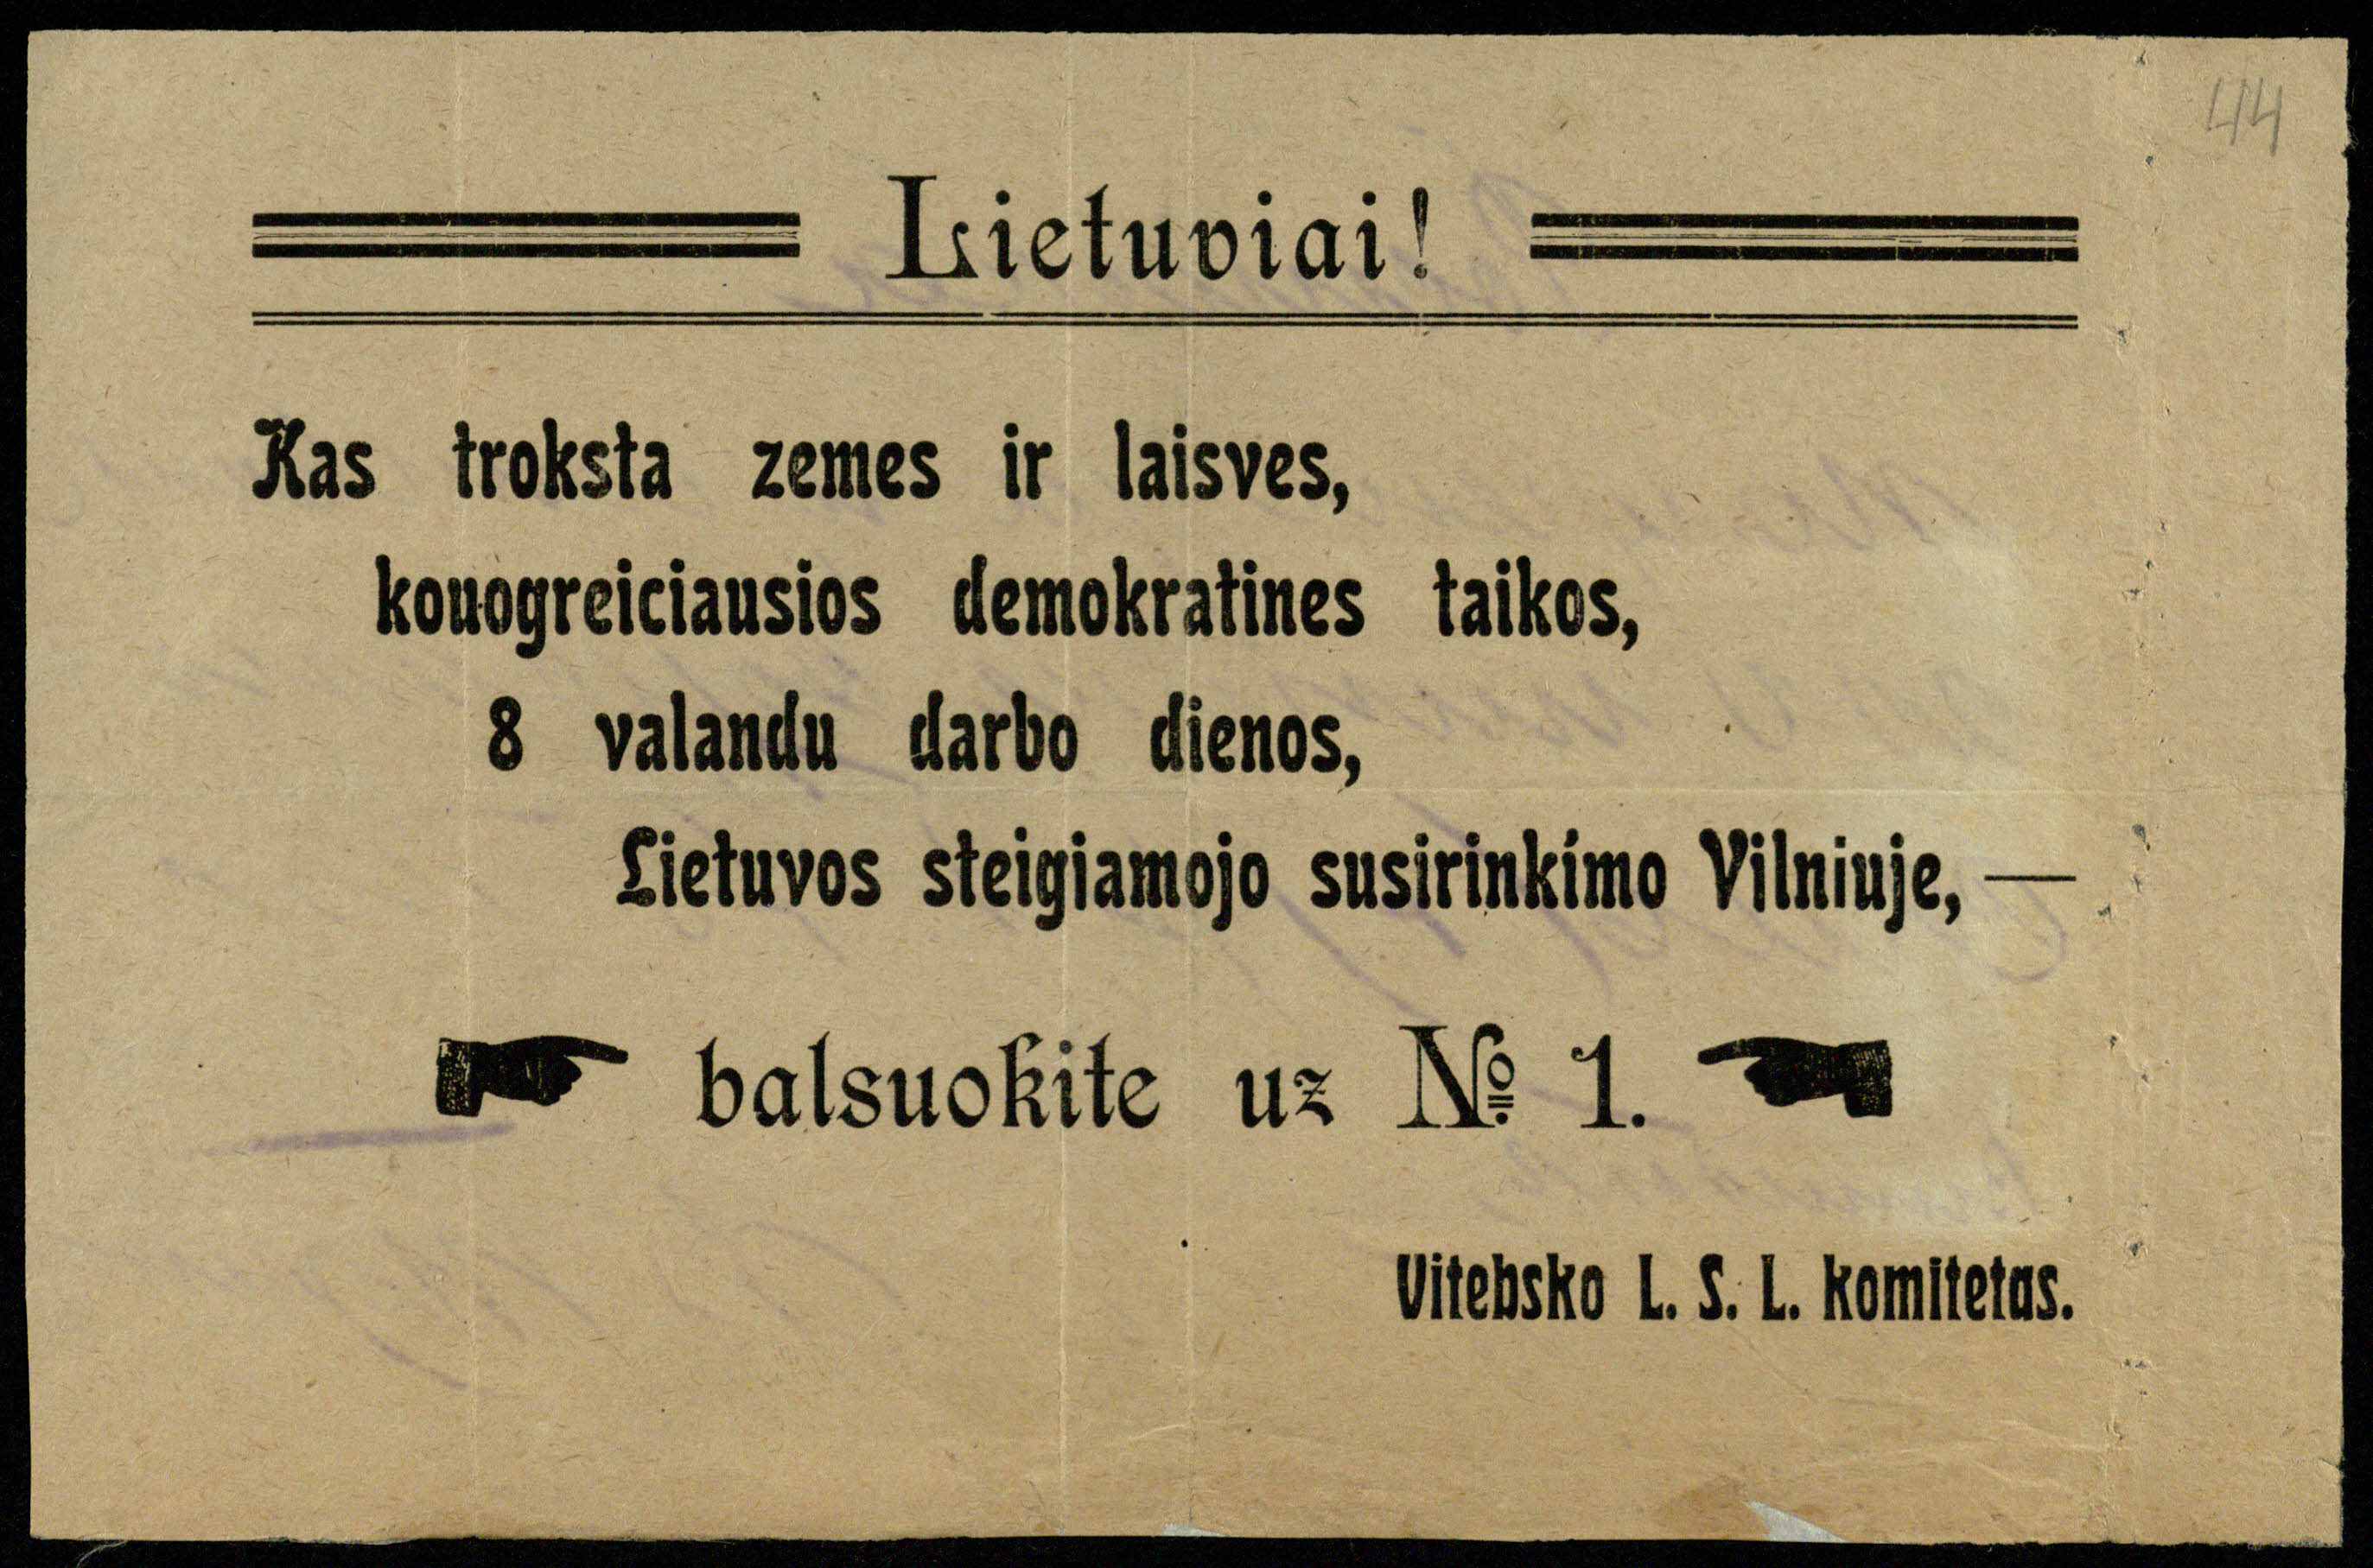 Lietuvos socialistų liaudininkų partijos Vitebsko komiteto rinkiminis atsišaukimas. [1917]. LMAVB RS, F199-3, lap. 44r.